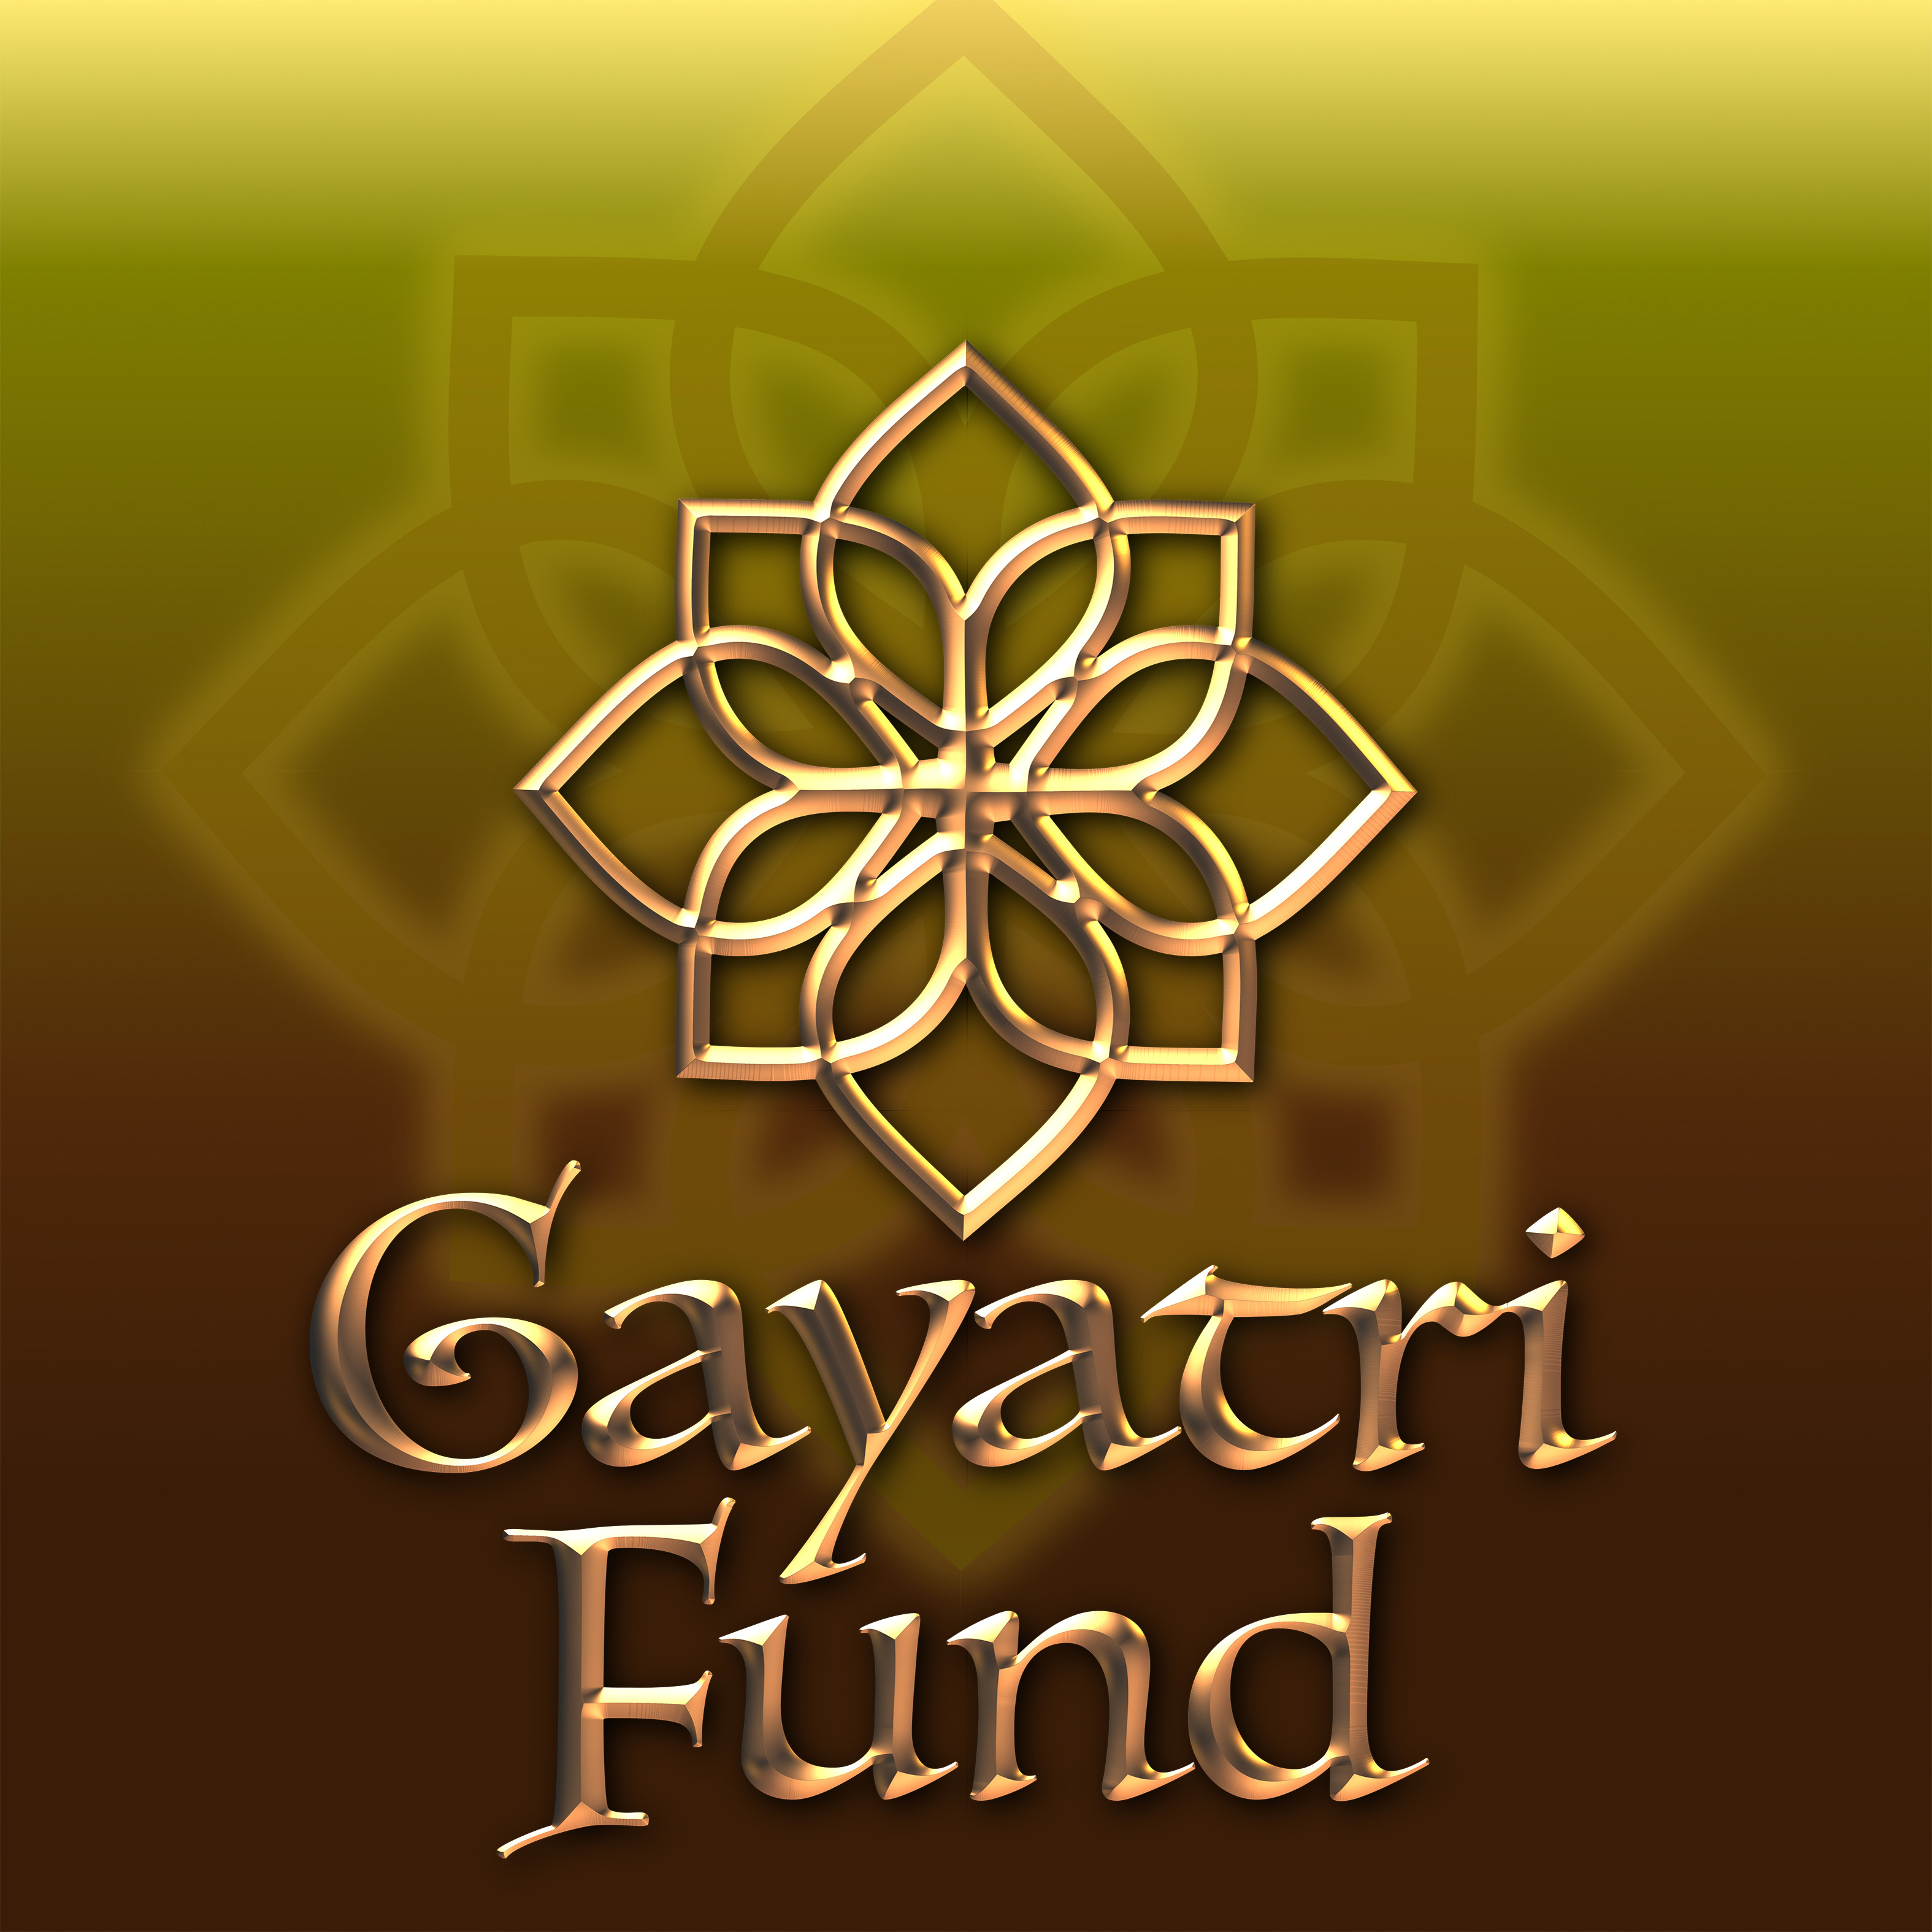 gayatri fund logo 4C RGB web